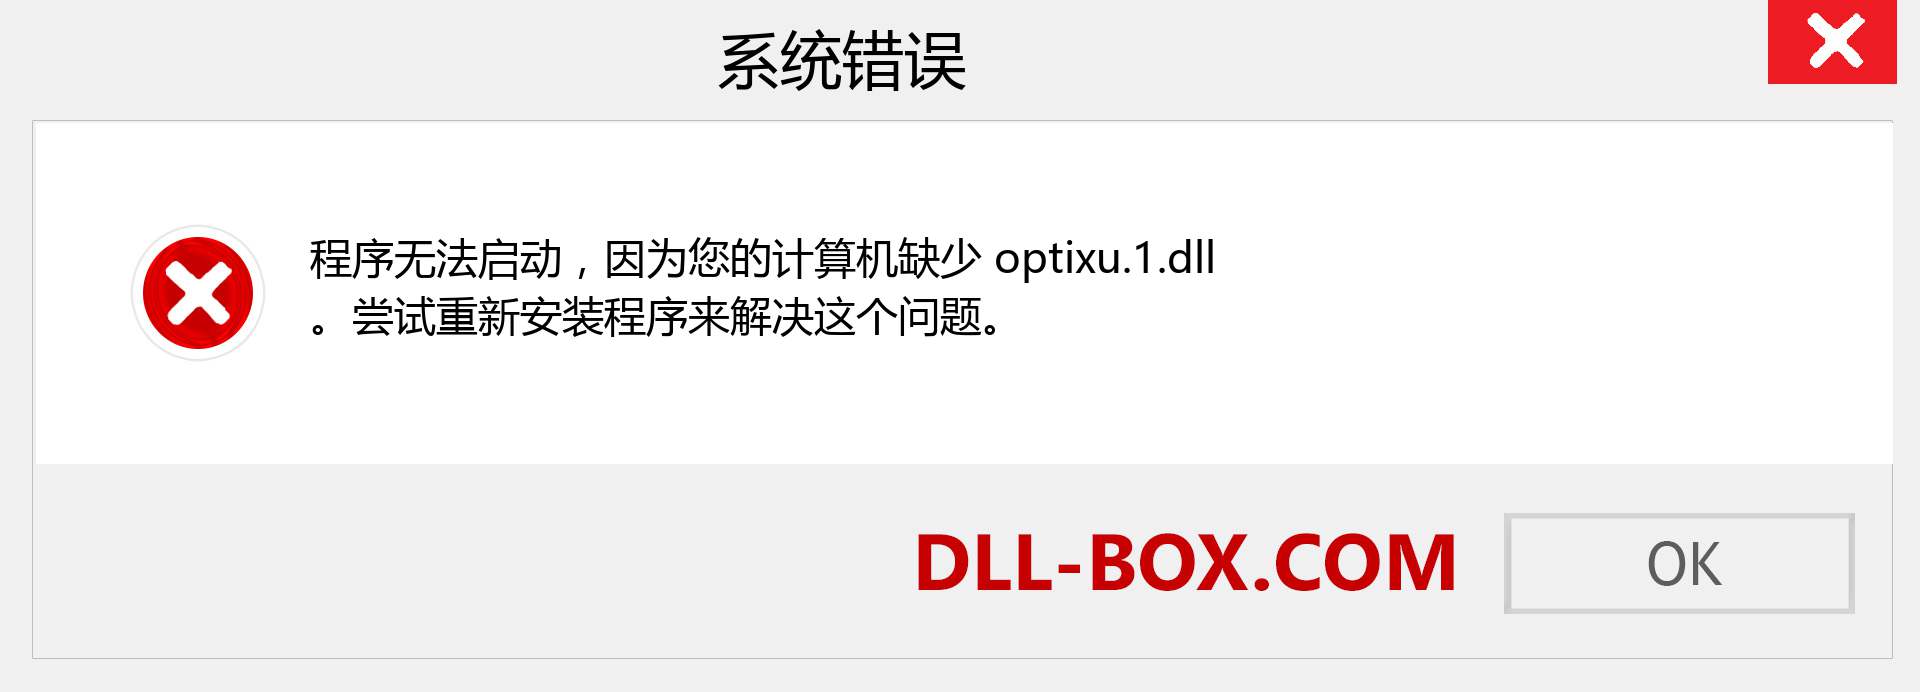 optixu.1.dll 文件丢失？。 适用于 Windows 7、8、10 的下载 - 修复 Windows、照片、图像上的 optixu.1 dll 丢失错误